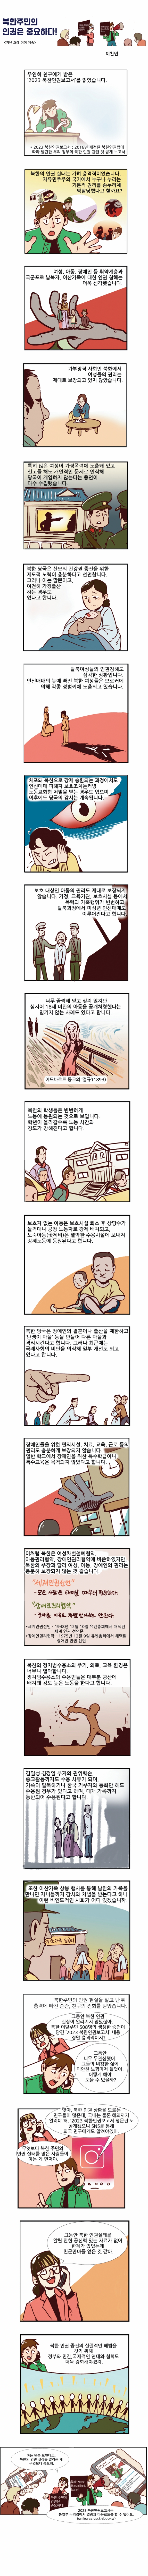 [카툰공감] 북한주민의 인권은 중요하다!